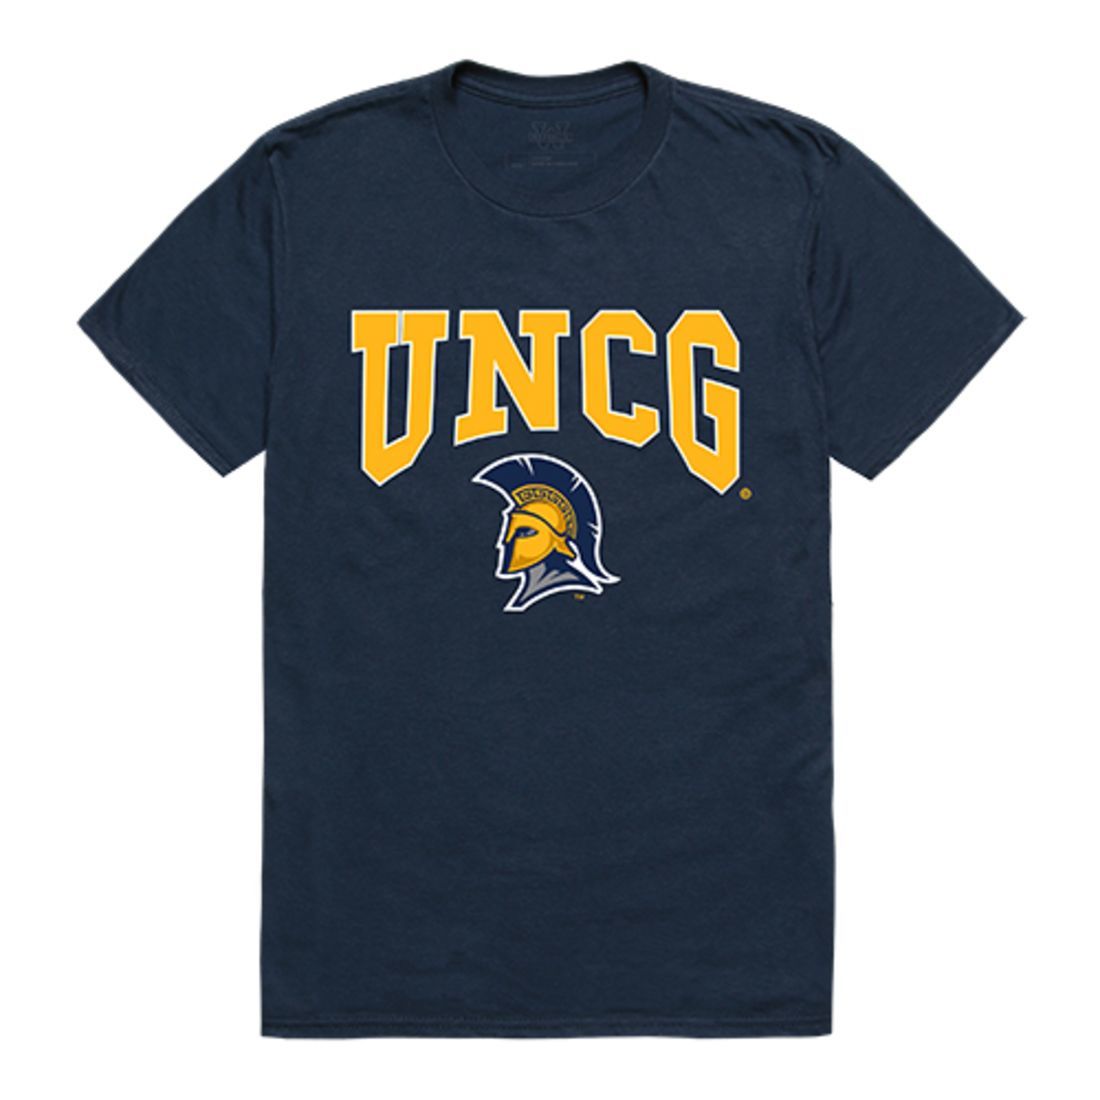 UNCG University of North Carolina at Greensboro Spartans Athletic T-Shirt Navy-Campus-Wardrobe